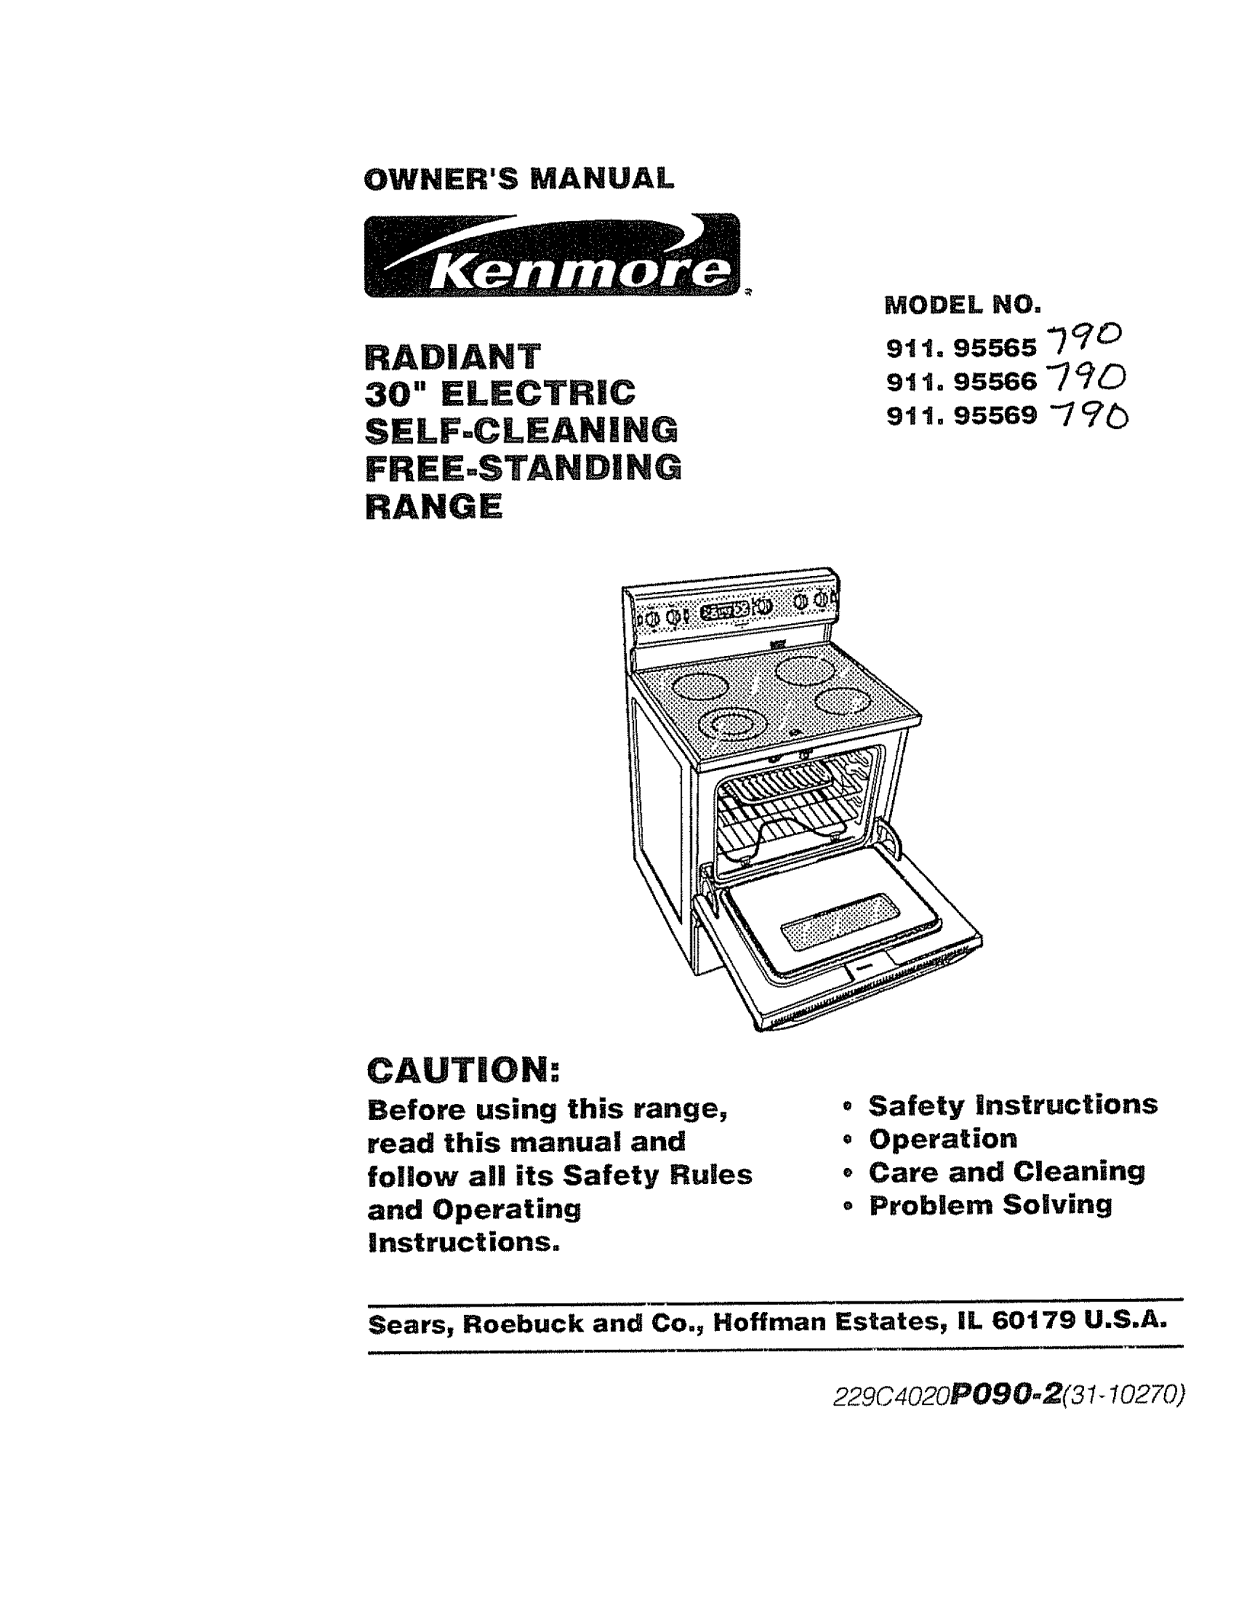 Kenmore 91195565790, 91195566790, 91195569790 Owner’s Manual